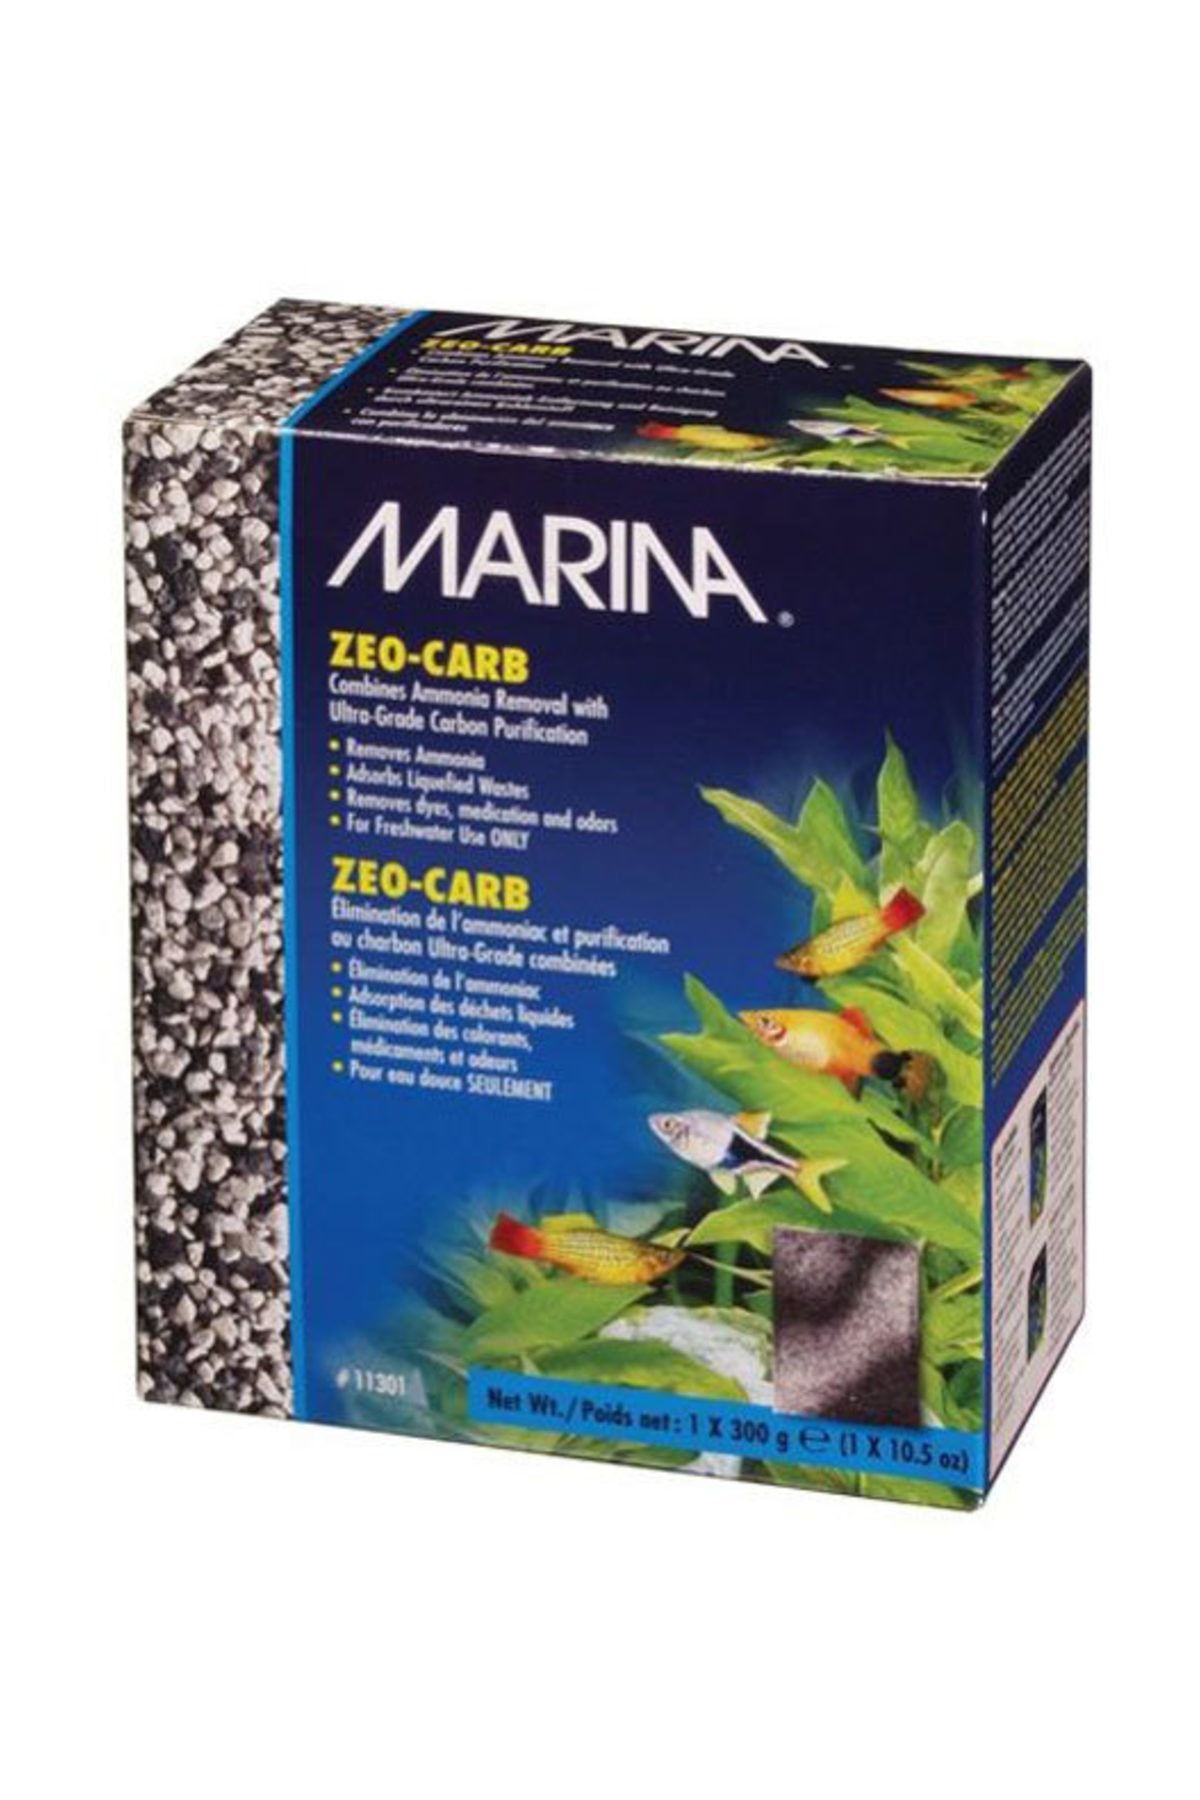 Marina Marina Zeo-carb (300gr)